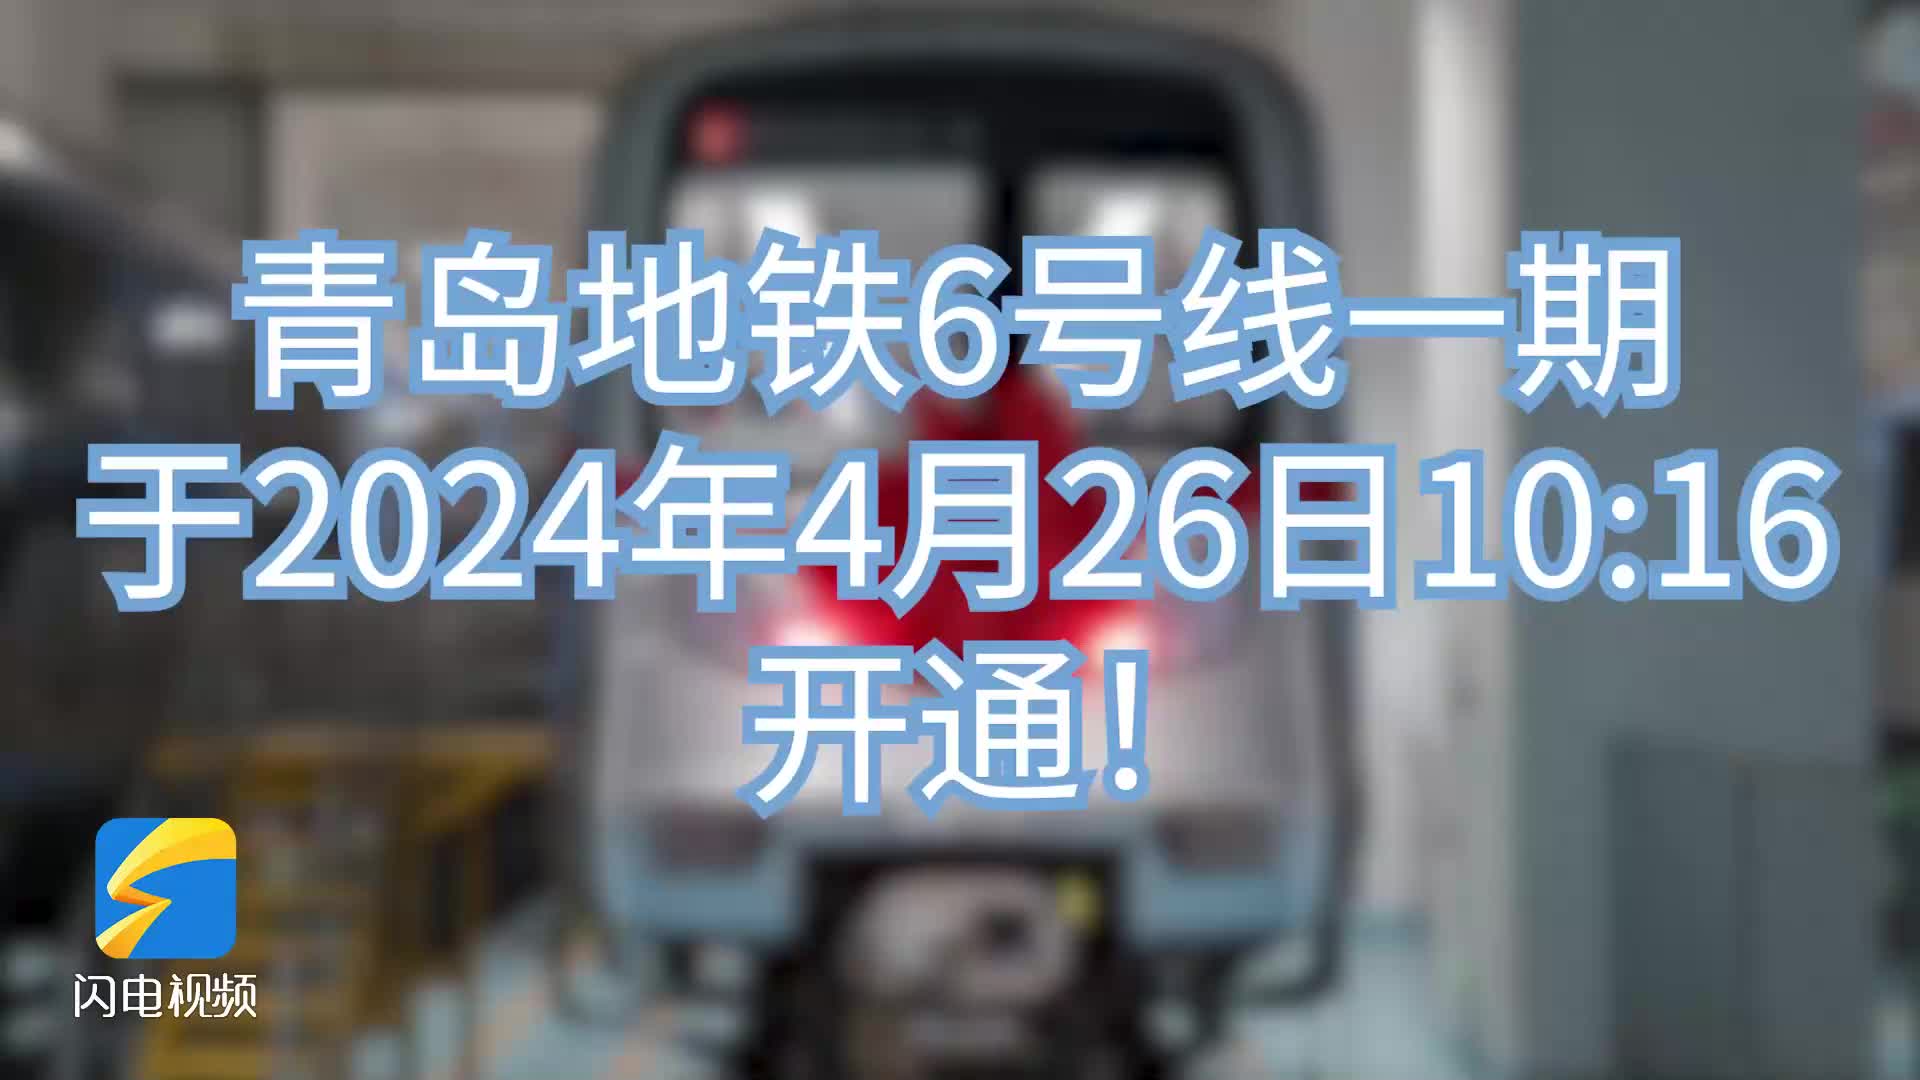 今天上午10点16分 青岛地铁6号线一期开通运营